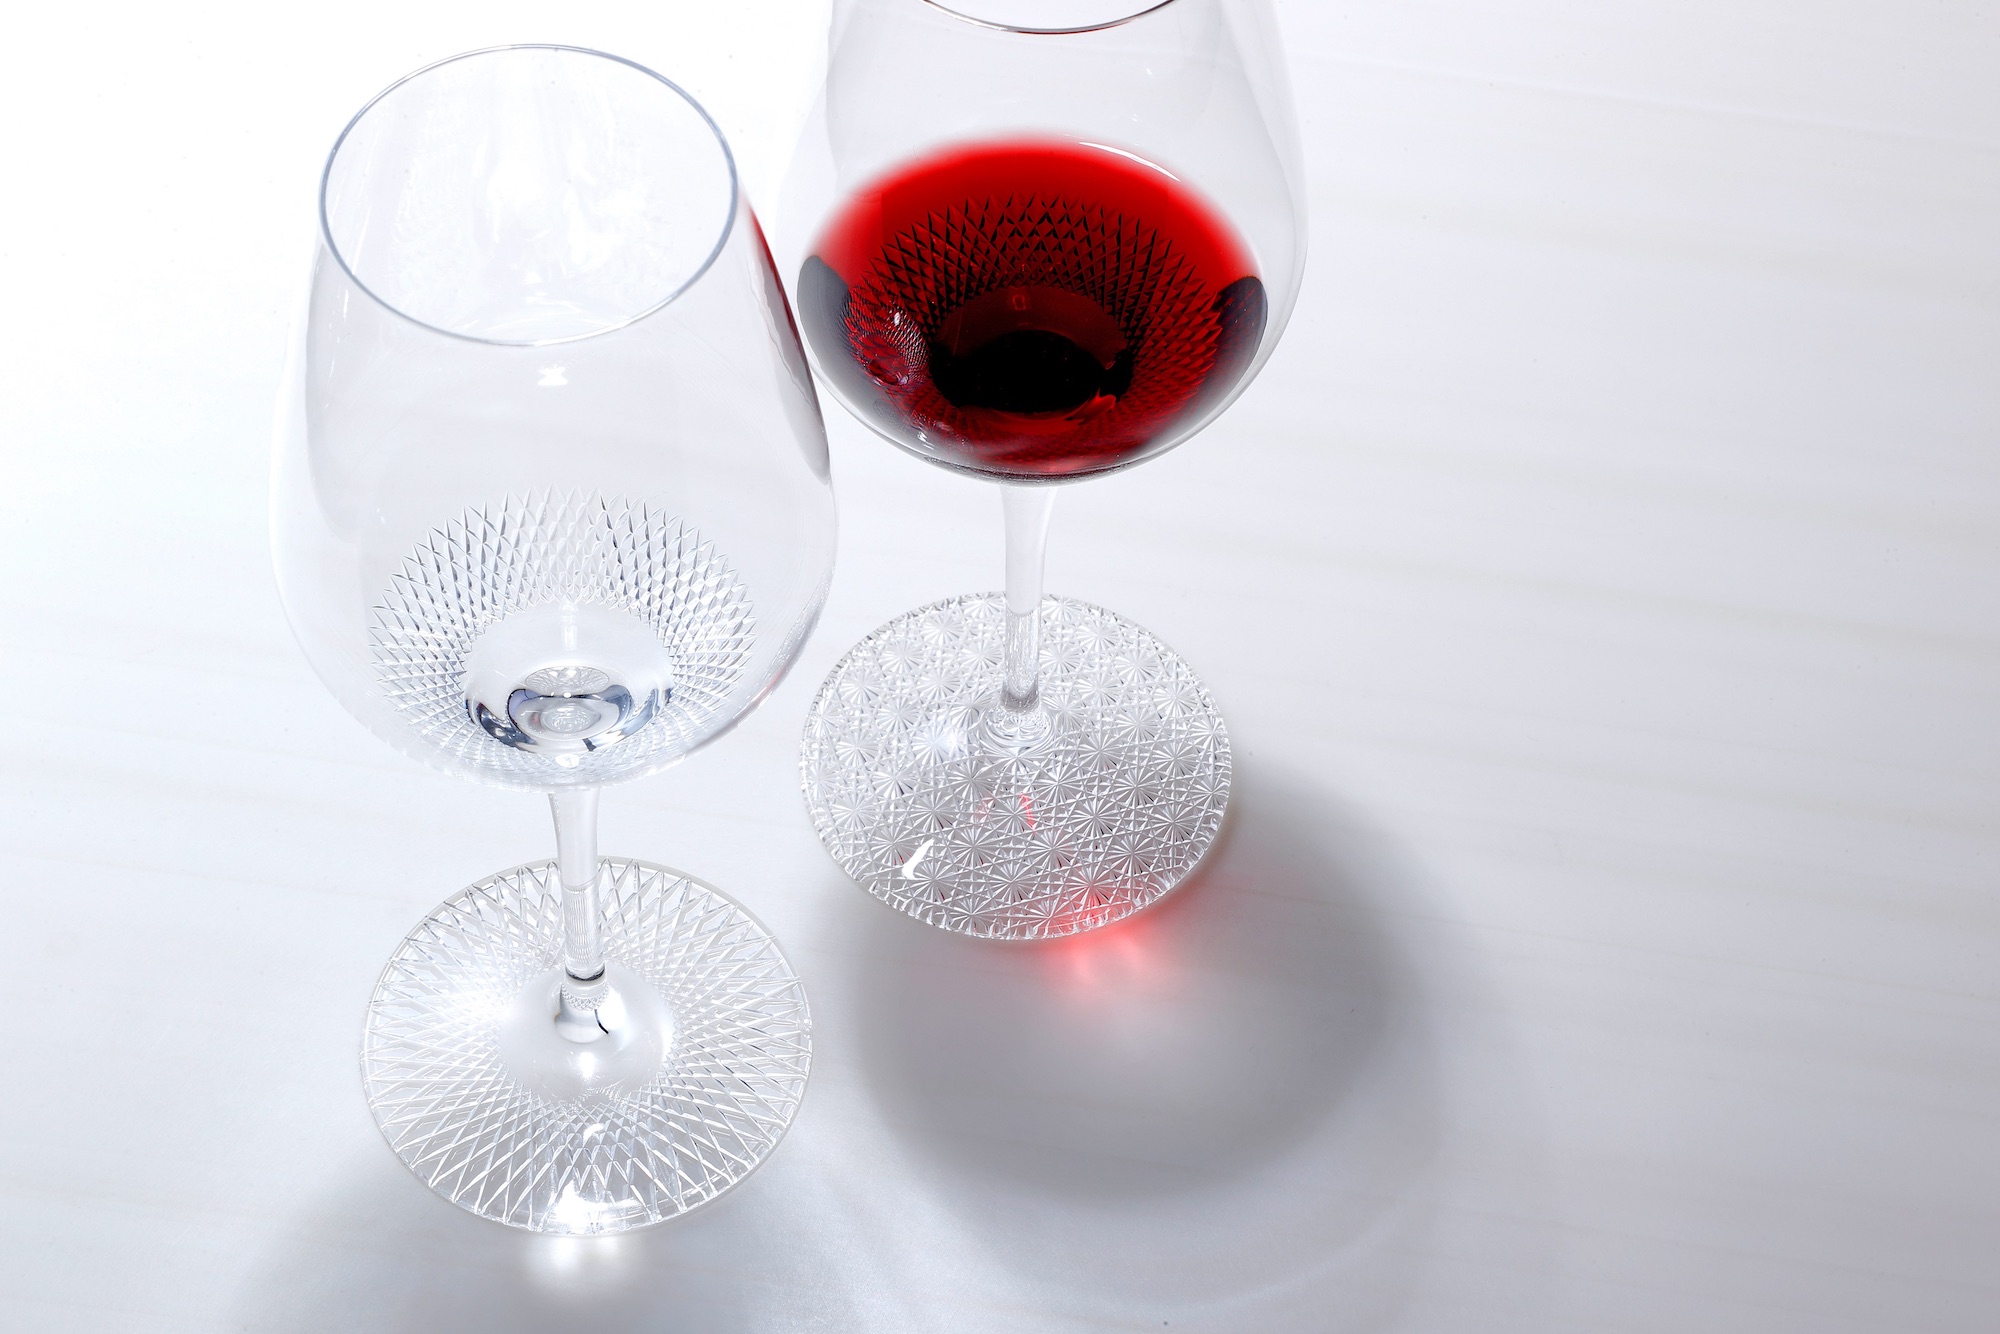 日本が世界に誇る伝統工芸、江戸切子。その魅力を伝える室町硝子工芸から登場したオリジナルのワイングラス「SUI-REN」。